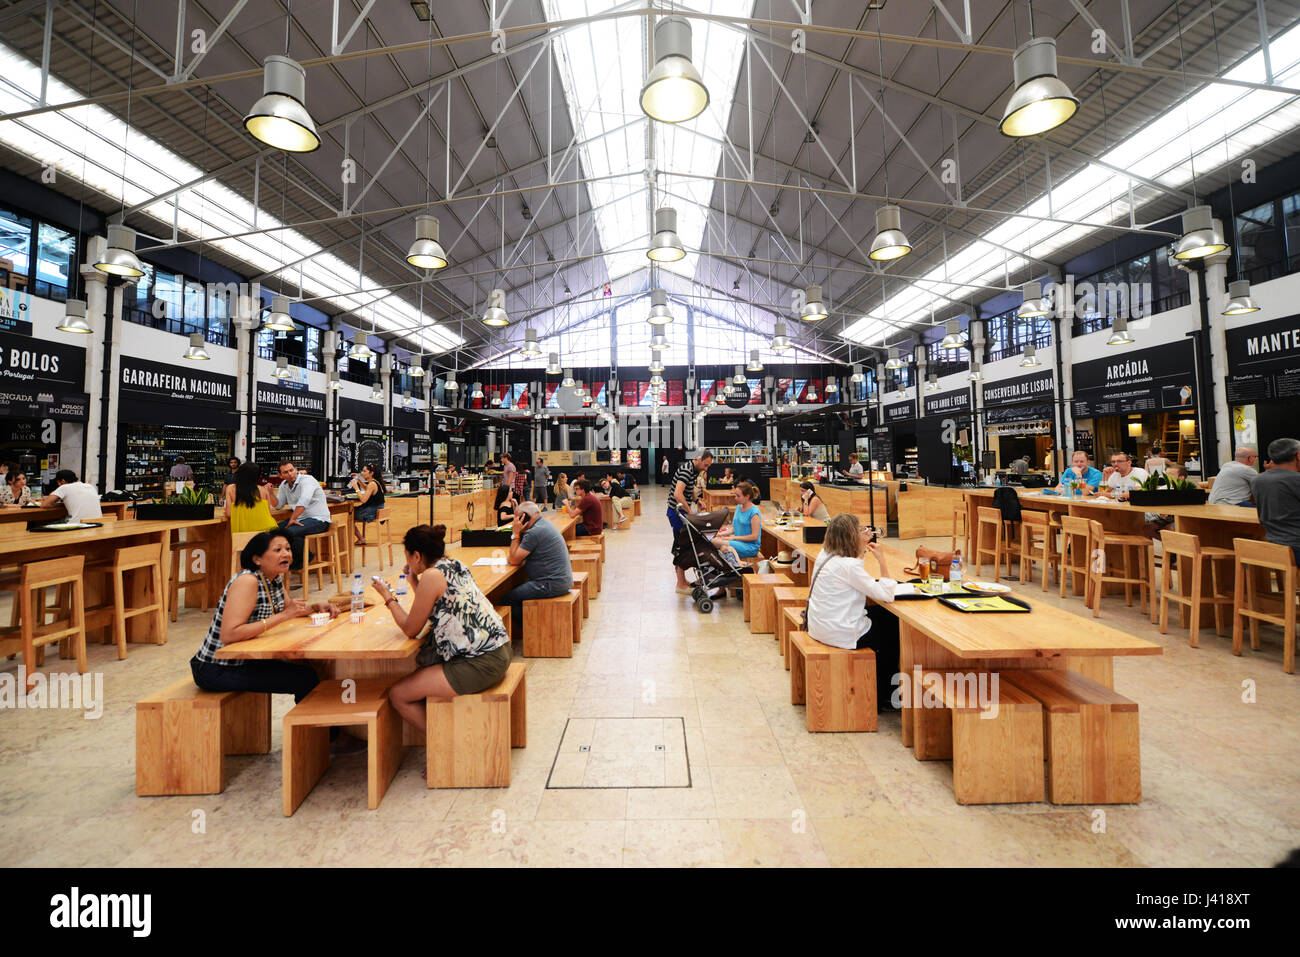 Tempo fuori mercato Lisboa è un food hall situato nel Mercado da Ribeira a Cais do Sodre a Lisbona, Portogallo. Foto Stock